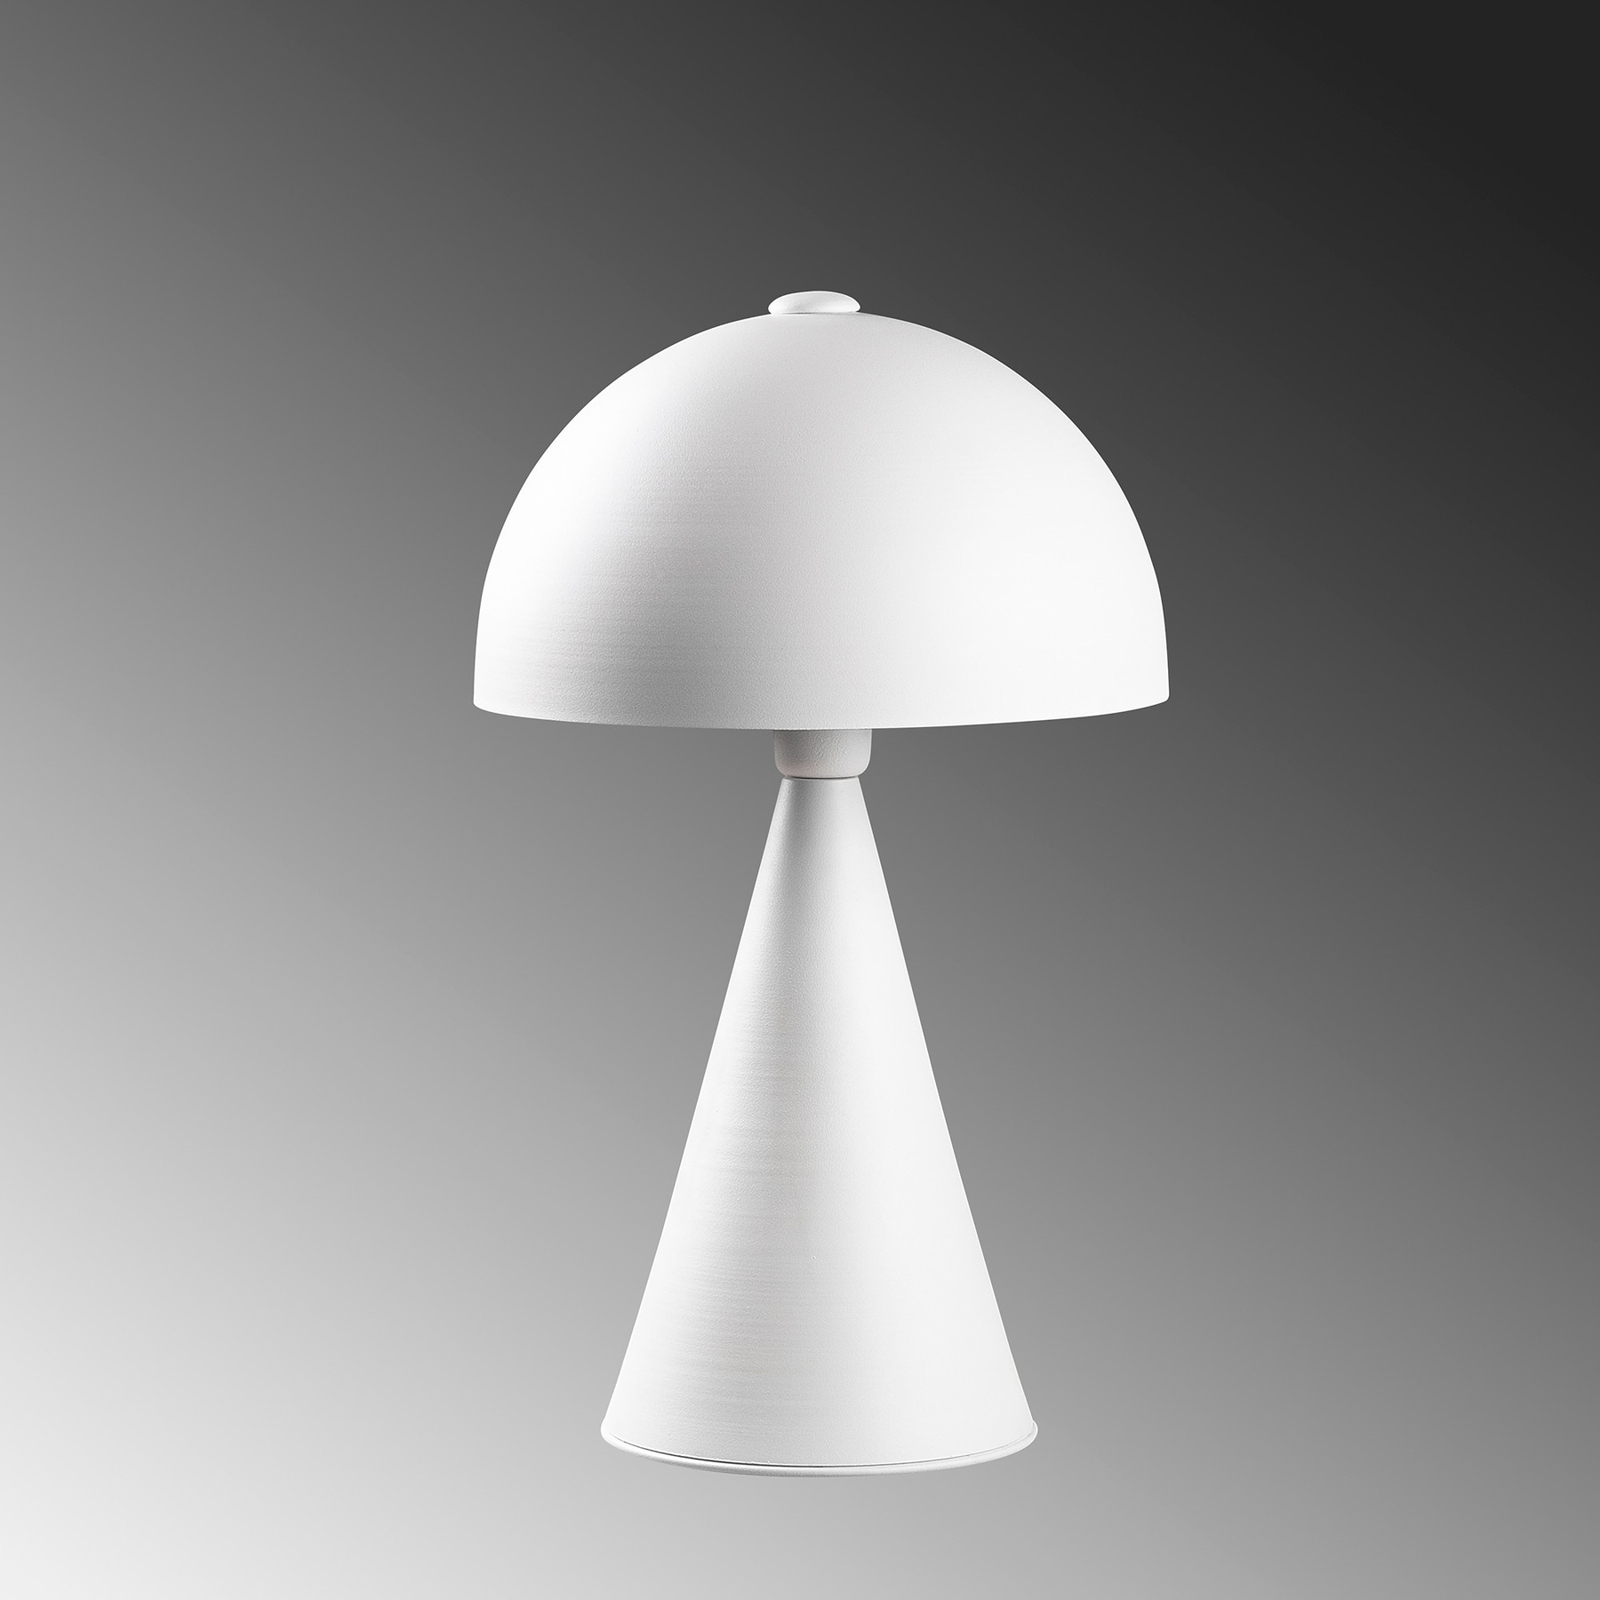 Namizna svetilka Dodo 5052, višina 52 cm, bela